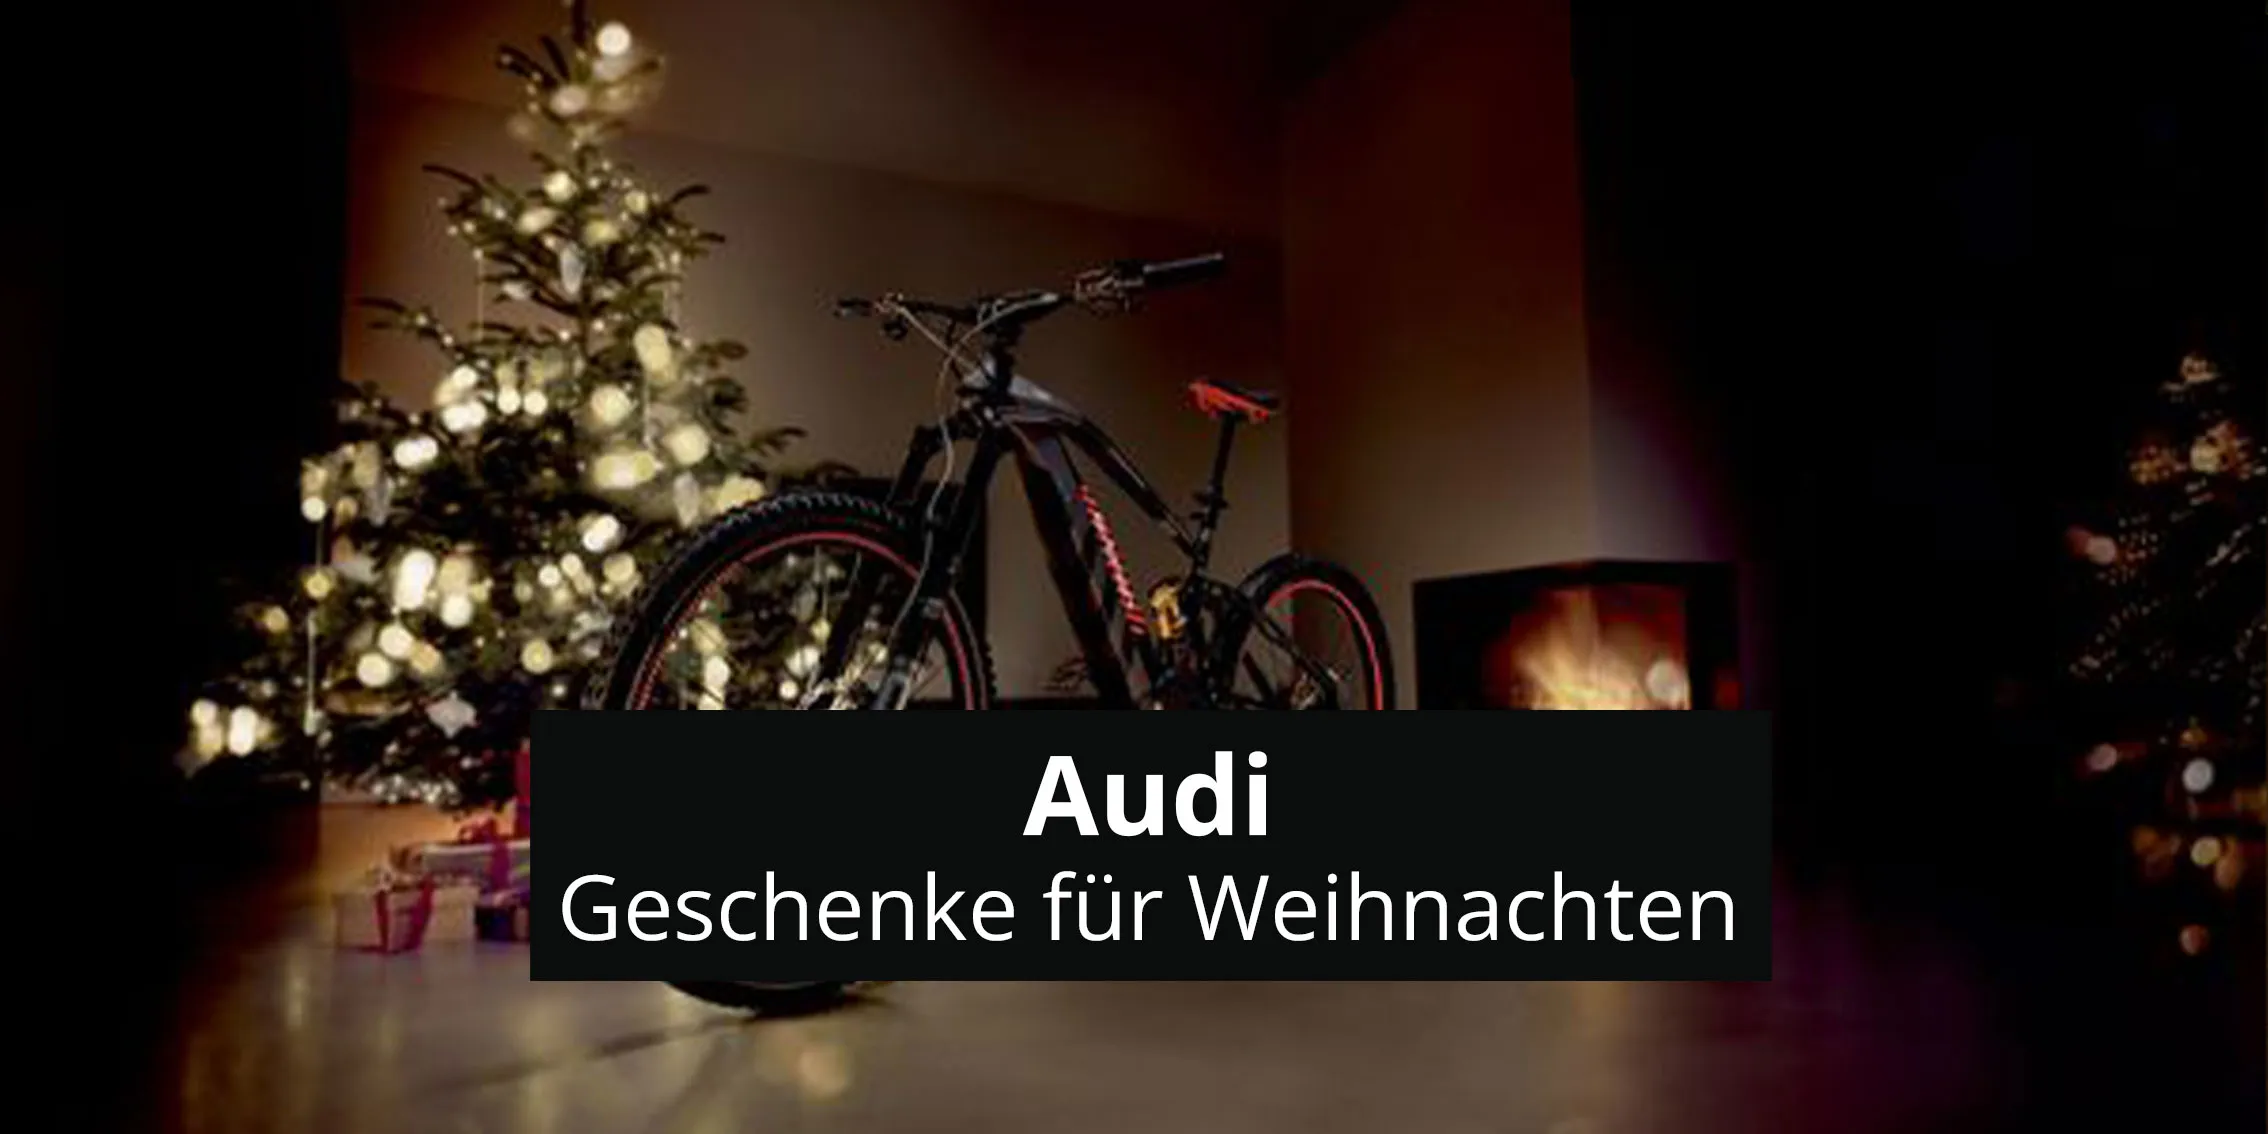 Audi geschenke fuer weihnachten teaser rosier onlineshop